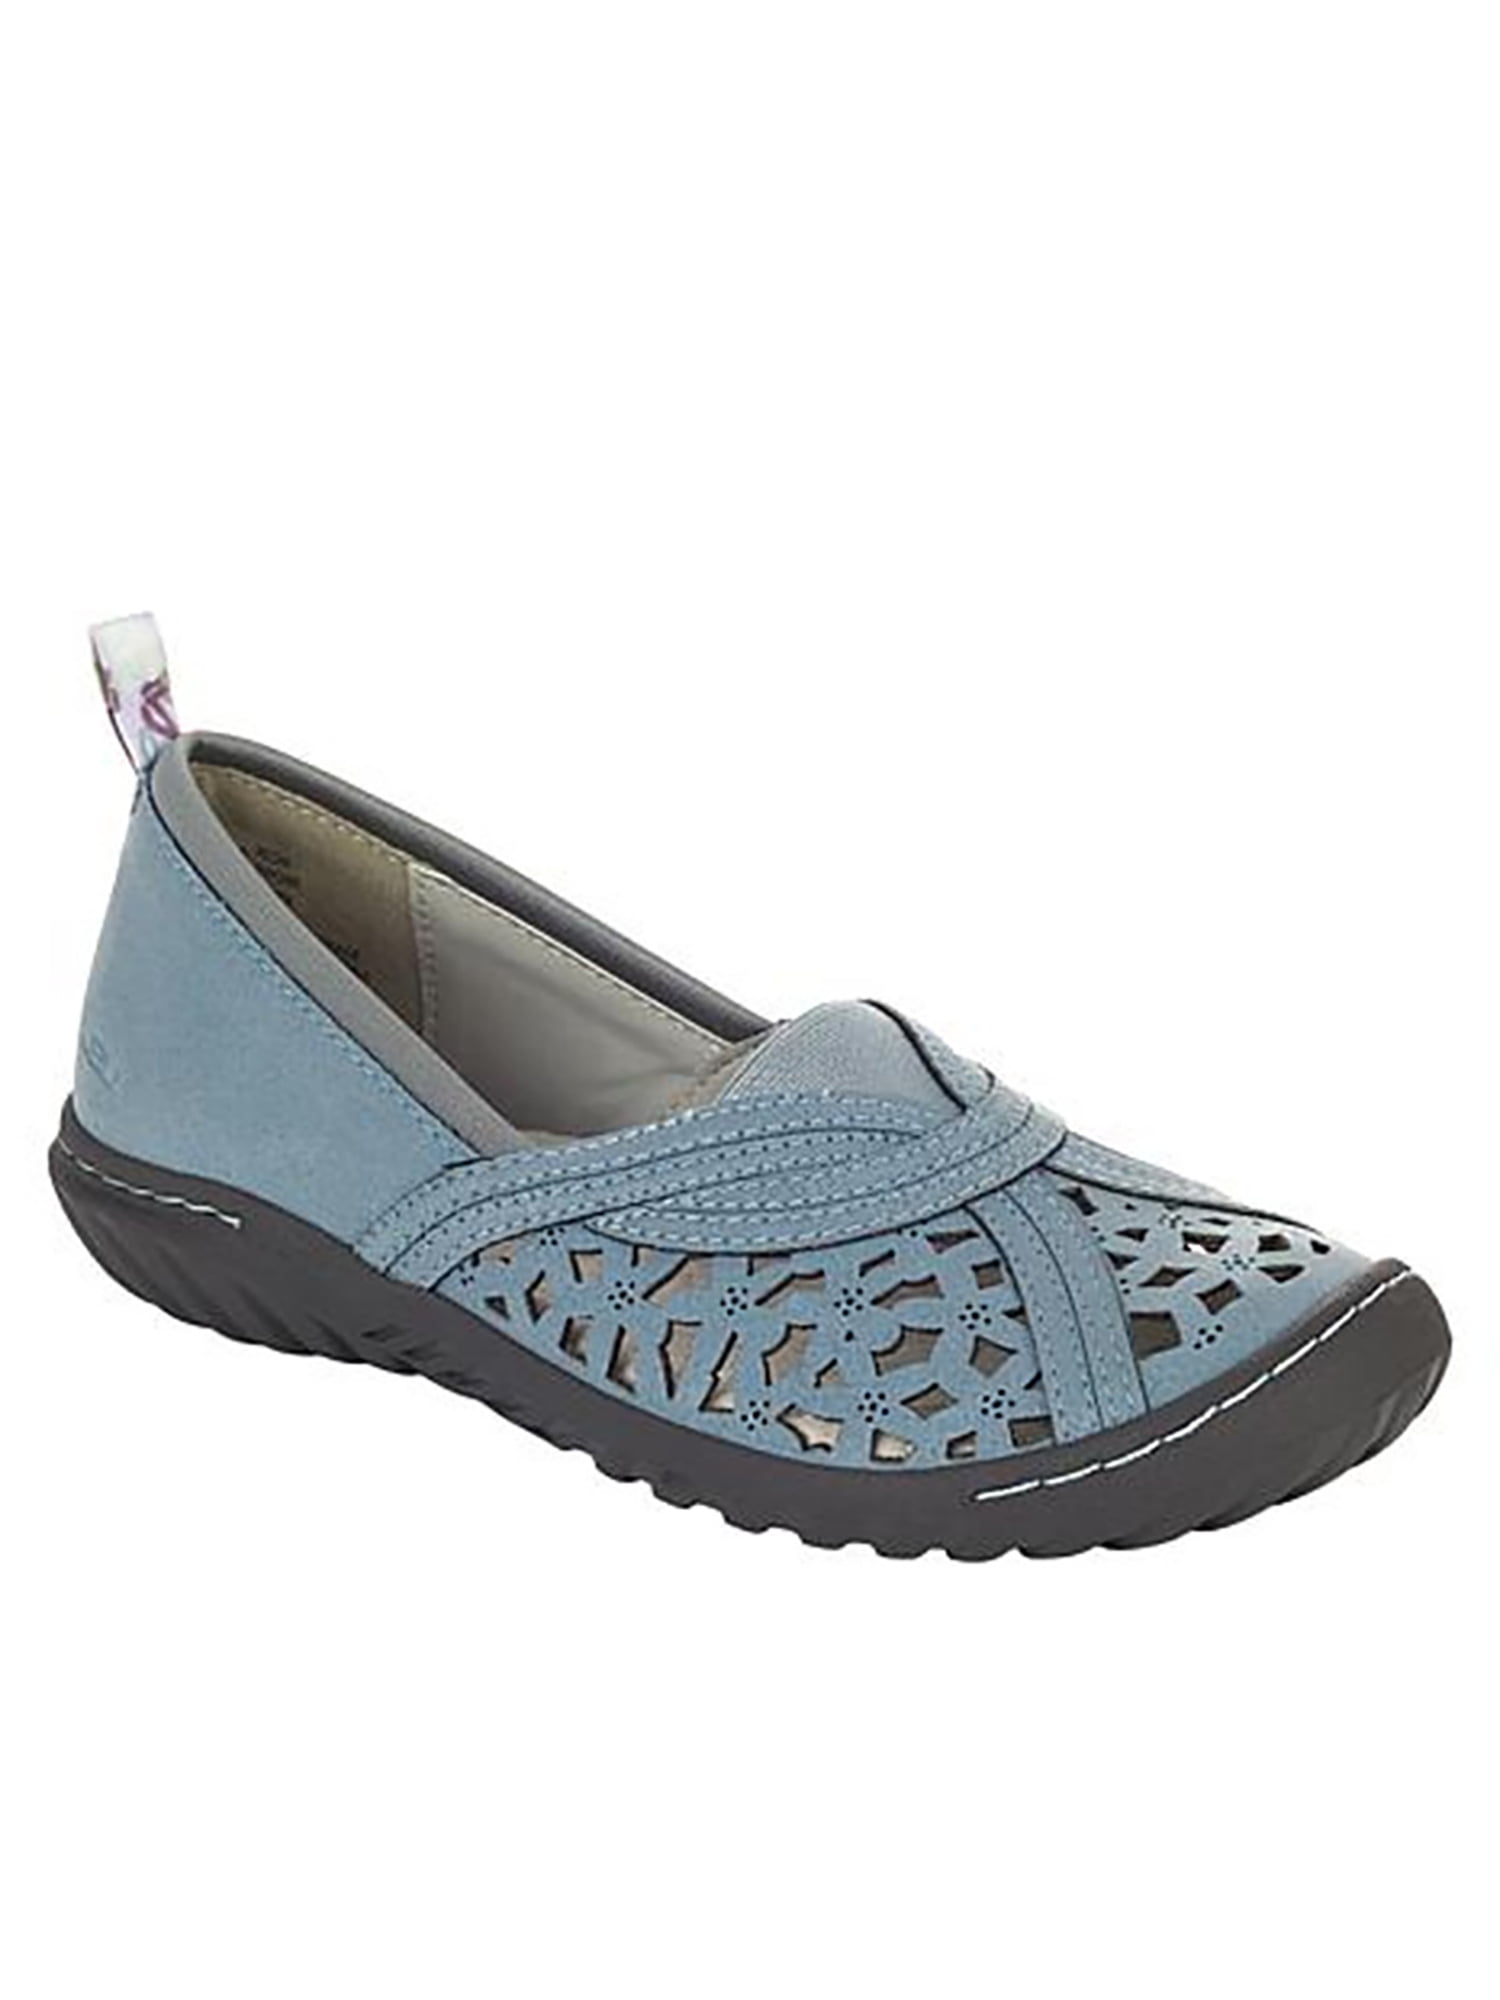 AU_ Women's Elastic Flats Shoes Ladies Breathable Casual Knit Slip On Shoes Surp 